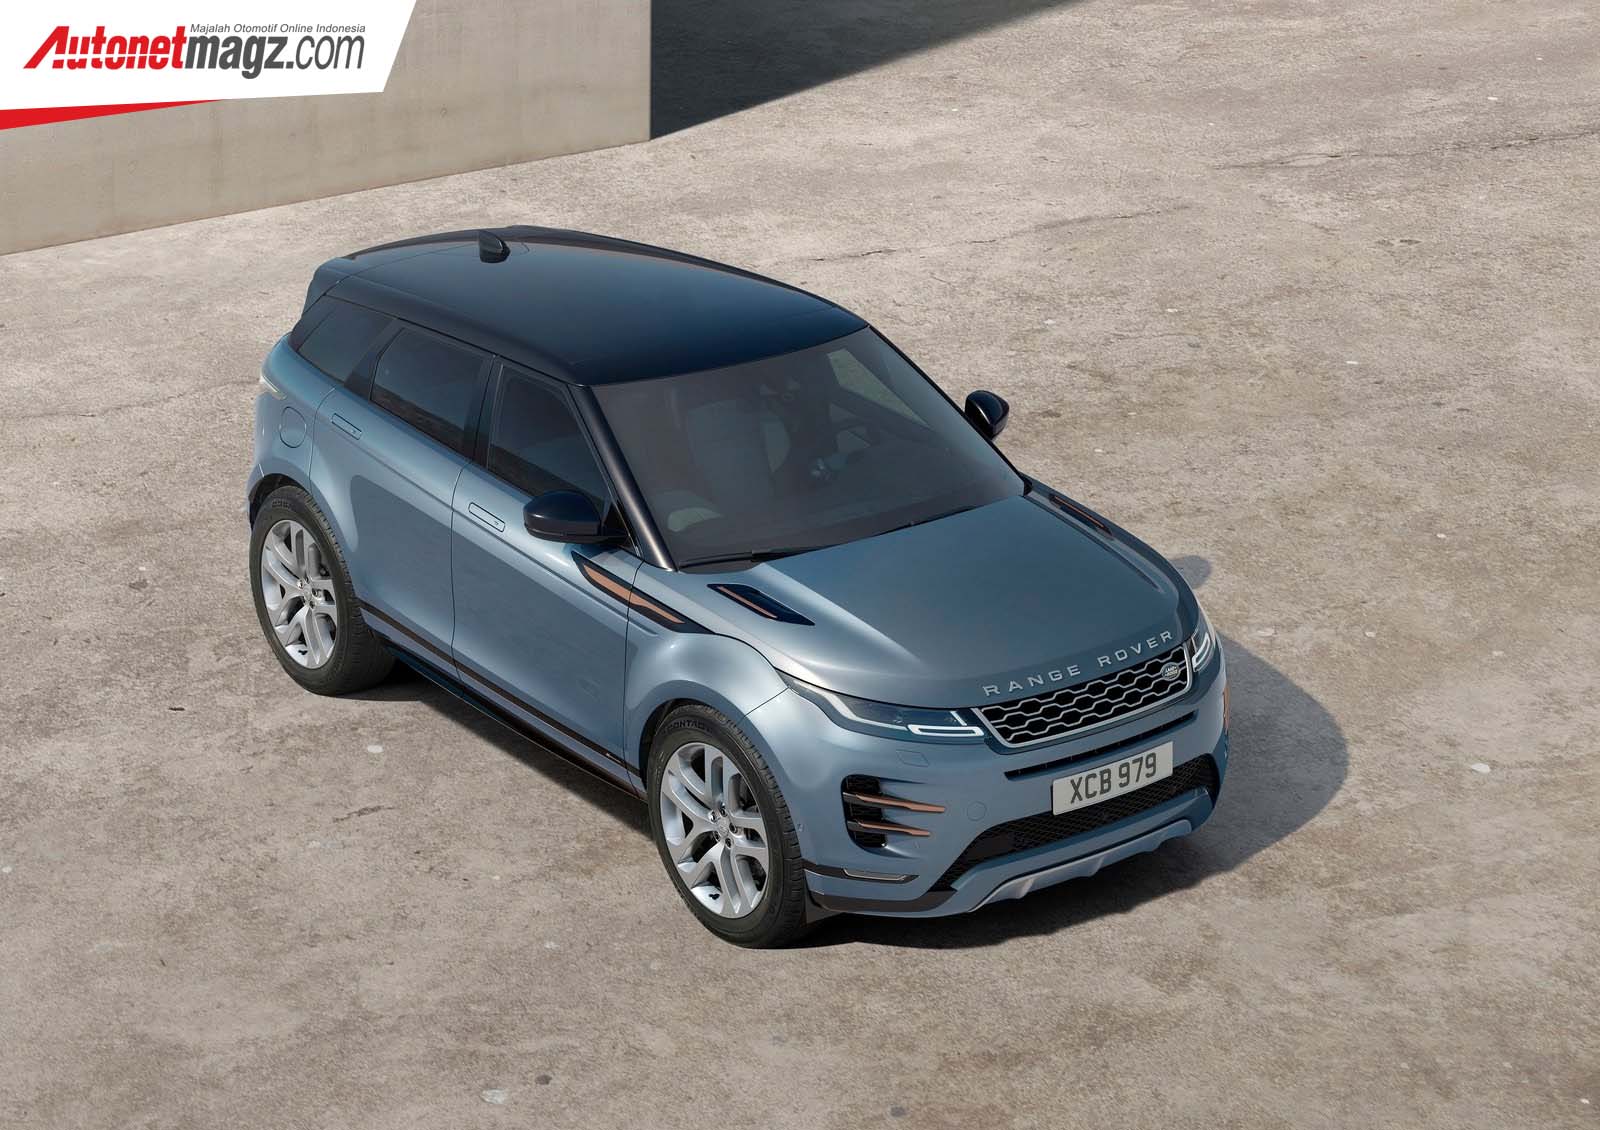 Berita, Range Rover Evoque 2020: Inilah Range Rover Evoque 2020, Velar Versi Pendek & Ceper